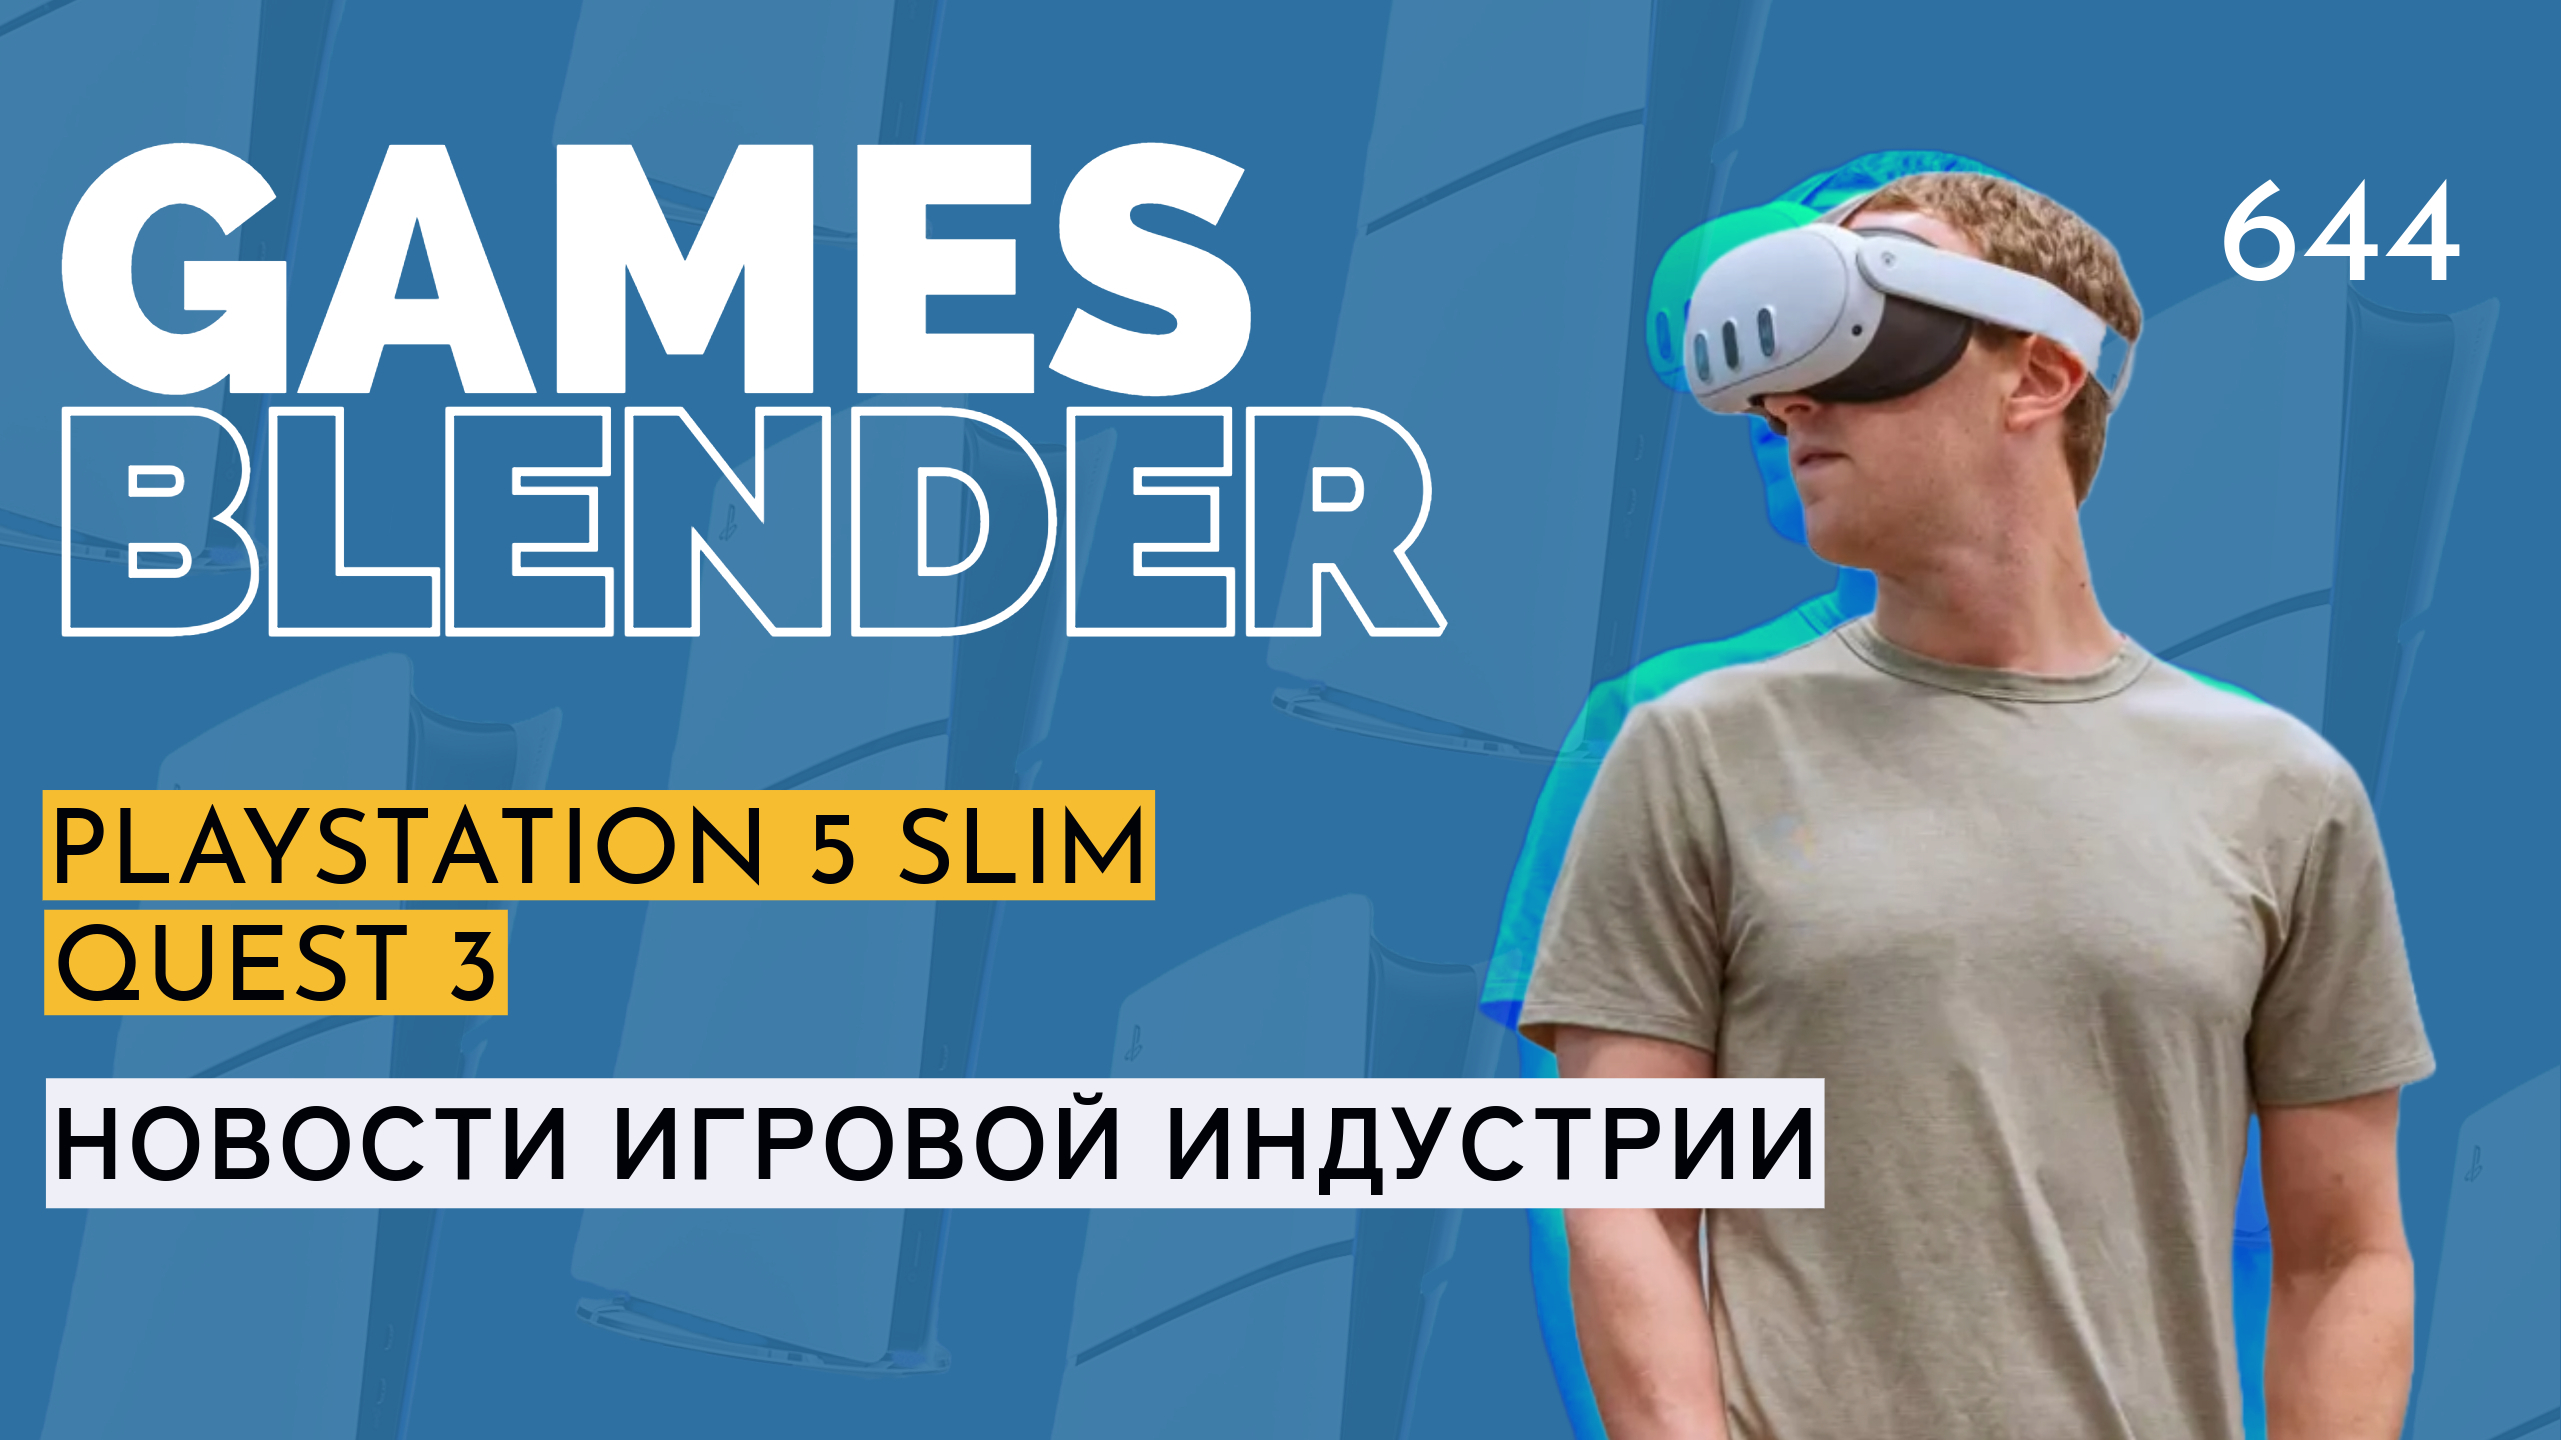 Gamesblender № 644: тонкая PS5, старт продаж Quest 3, уход главы Unity, Cyberpunk 2 и возвращение Commandos